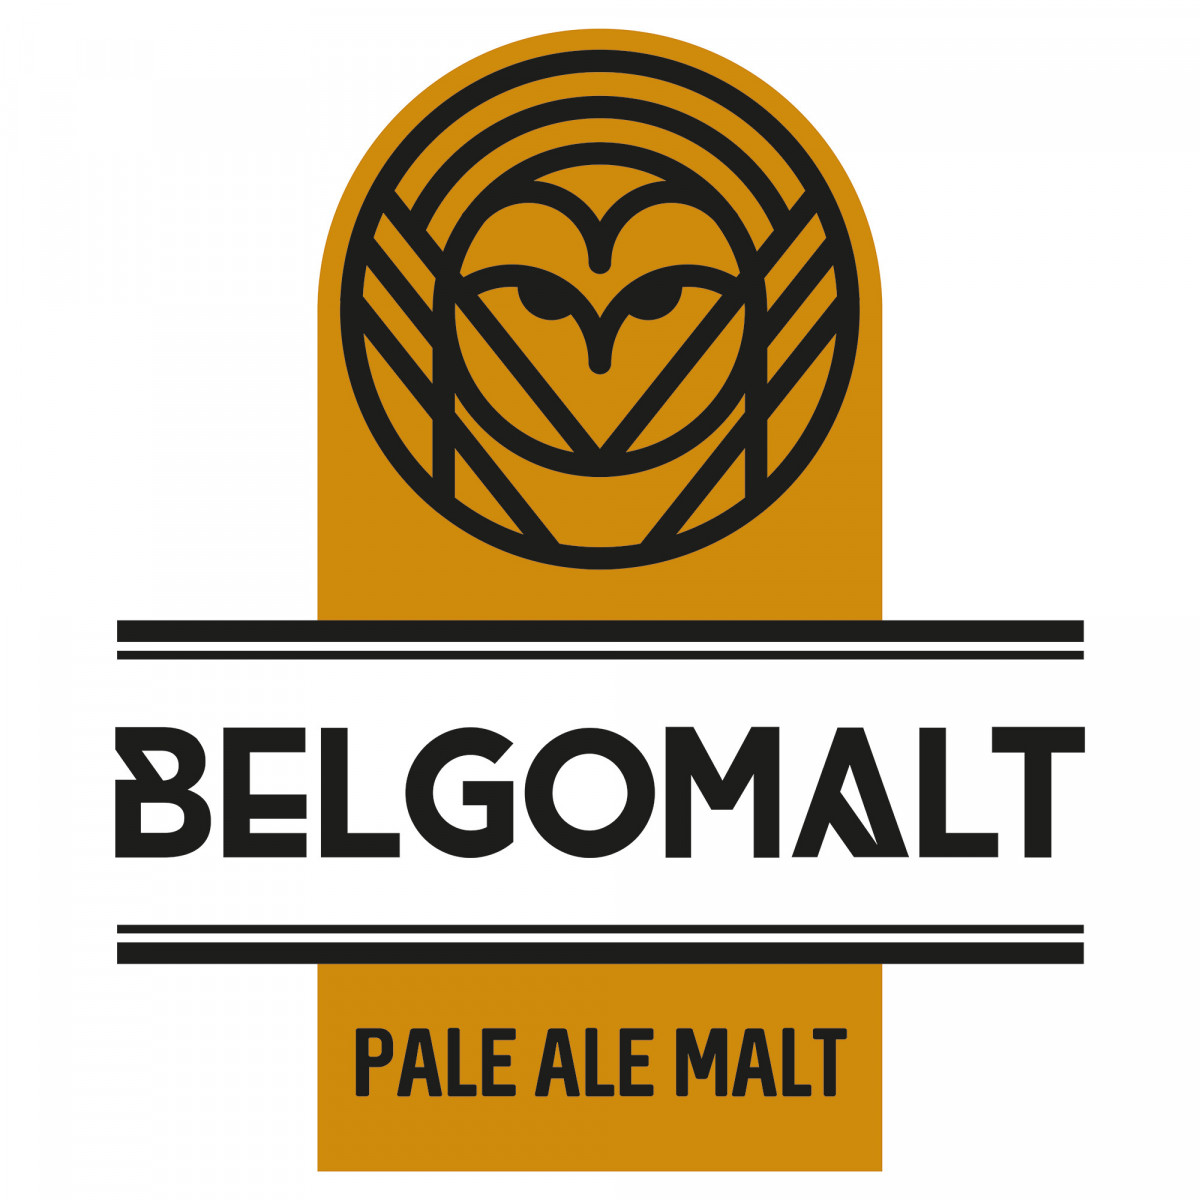 Belgomalt Pale Ale 5 - 7 EBC 1 kg